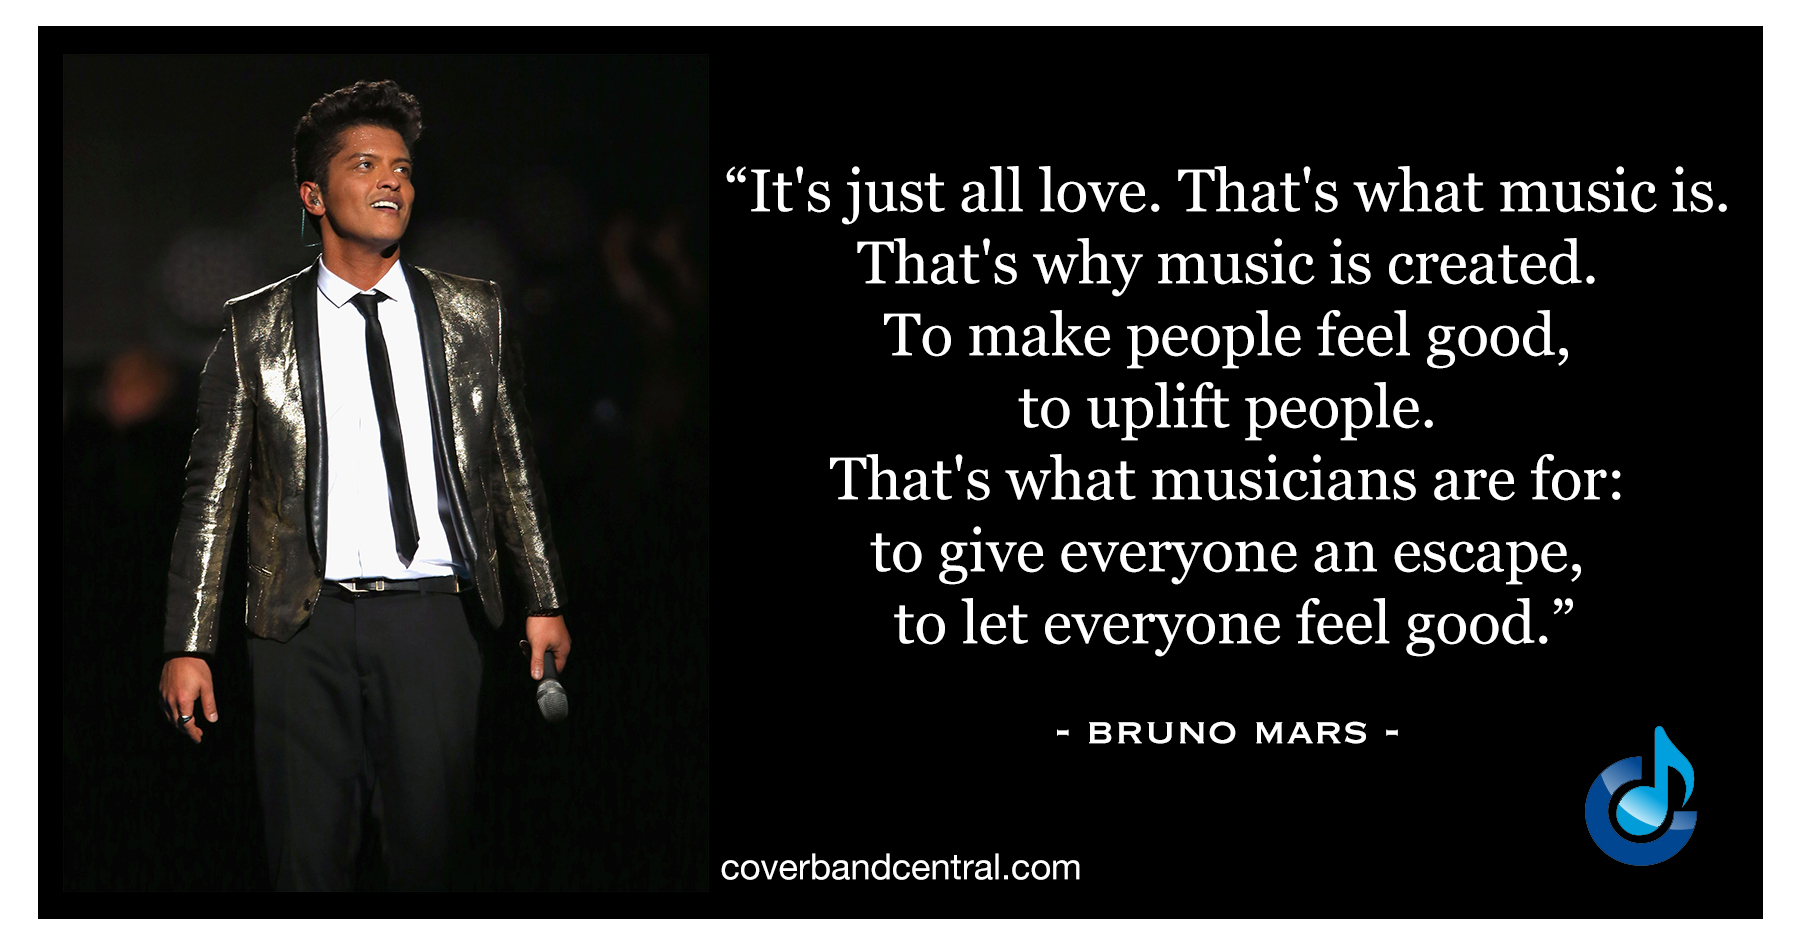 Bruno Mars quote